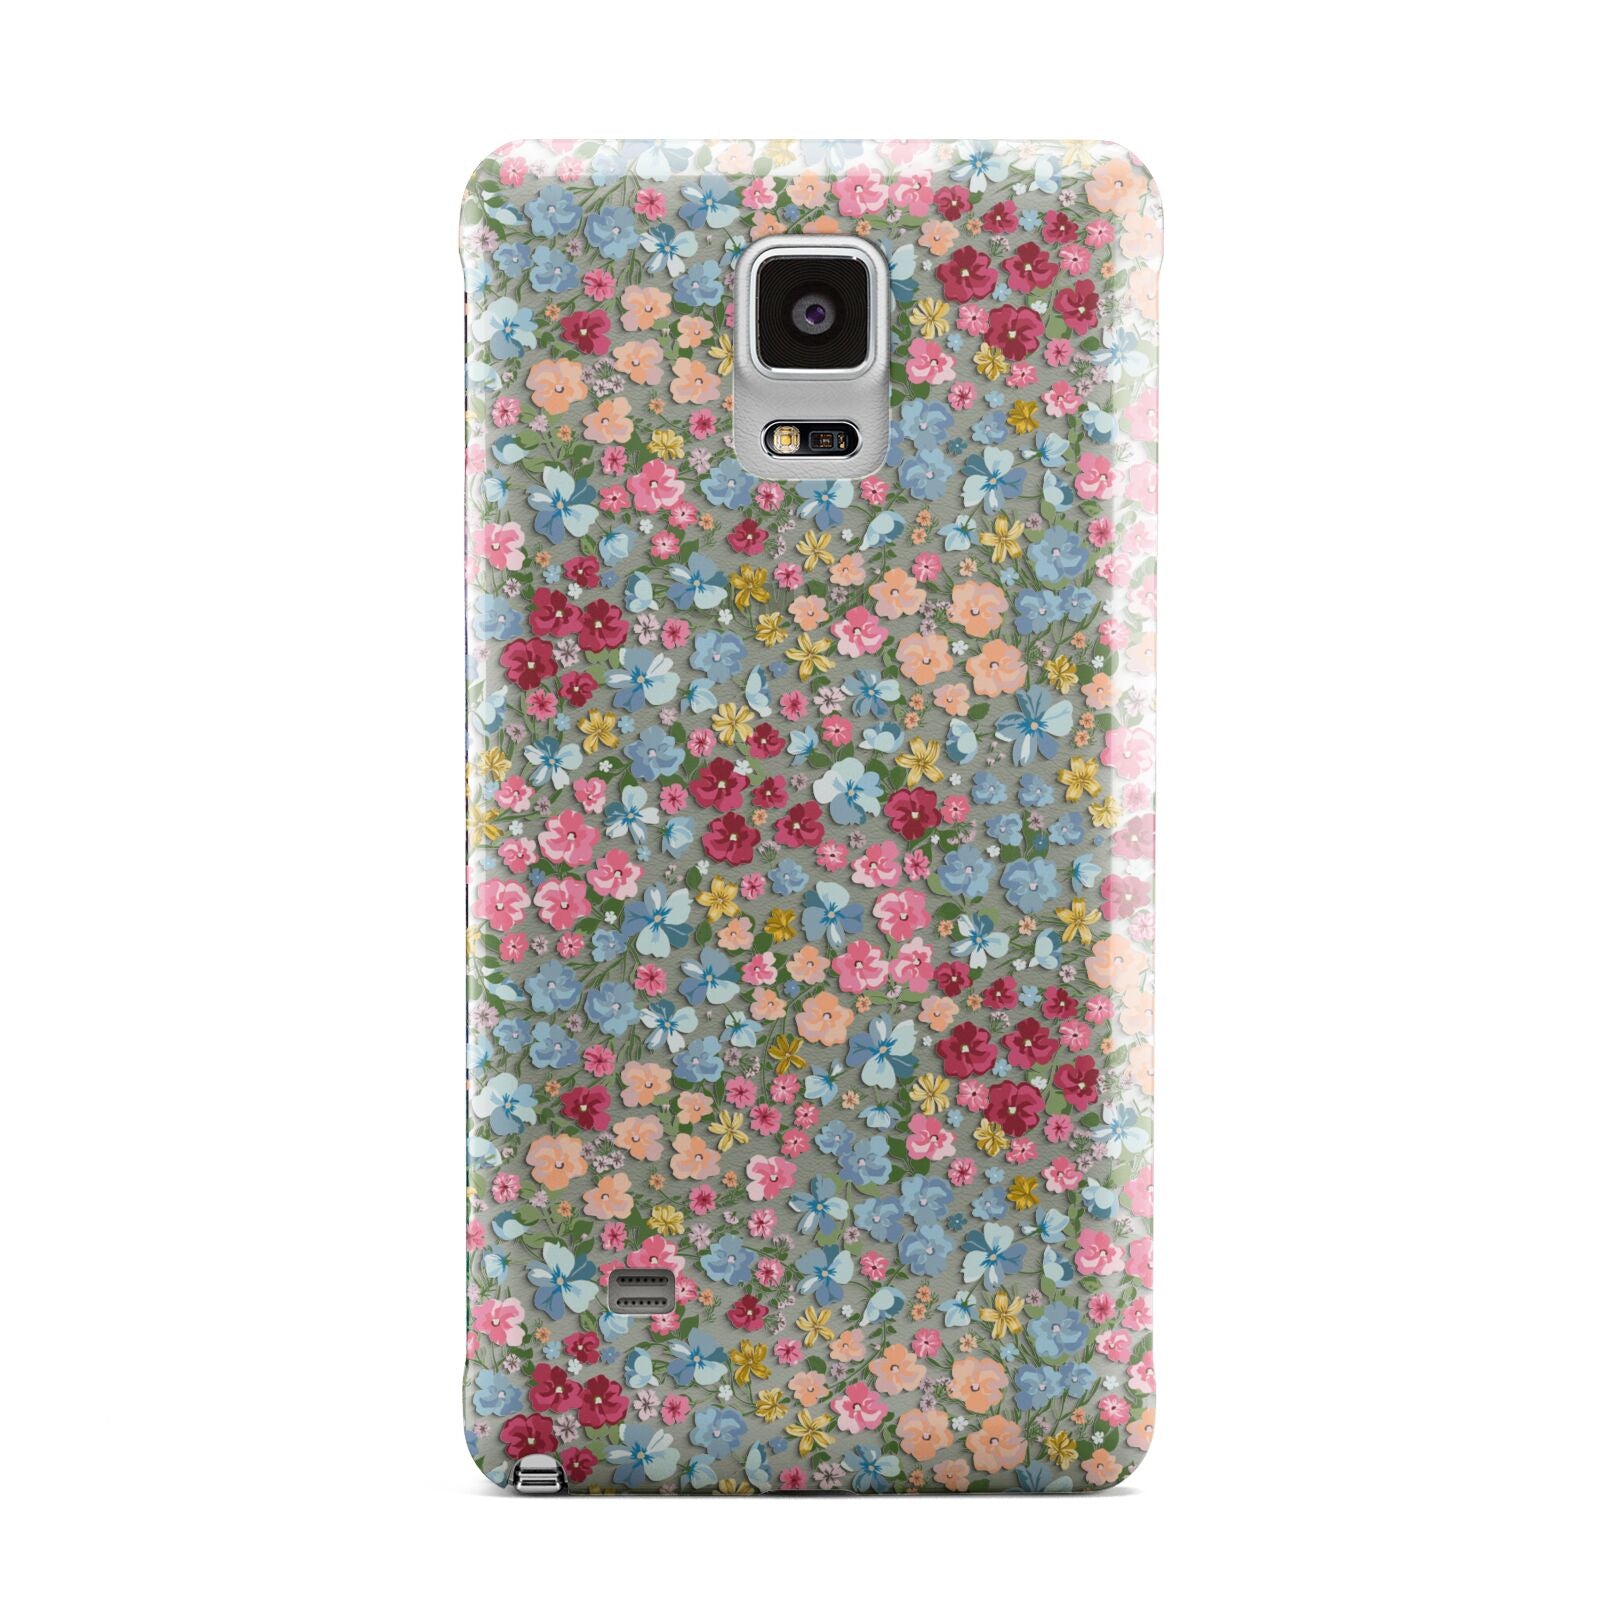 Floral Meadow Samsung Galaxy Note 4 Case